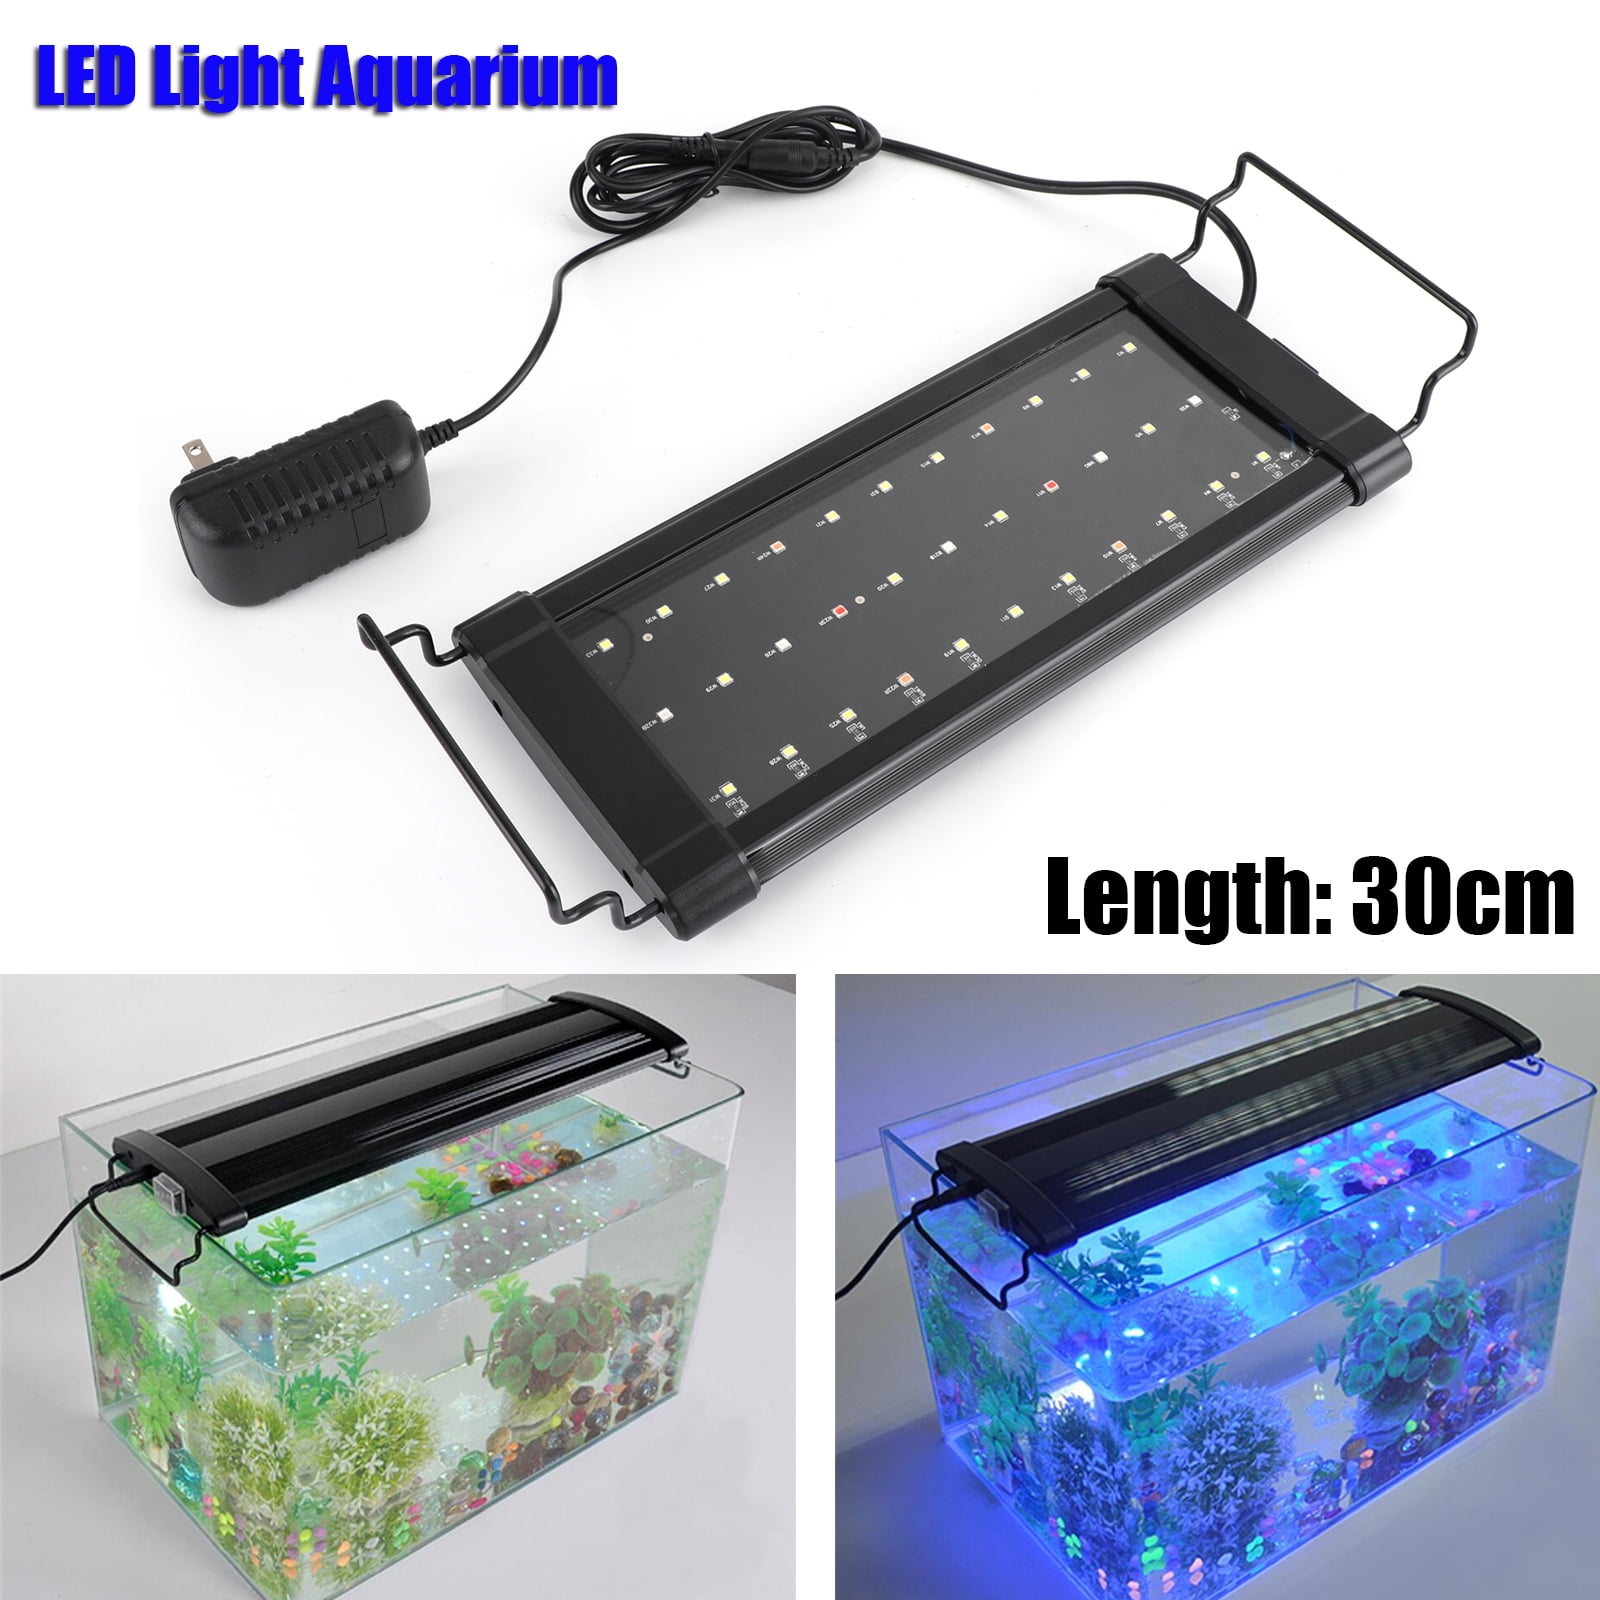 NICREW Planted LED Aquarium Light 24/7 Automated Aquarium Lighting 60cm LED Fish Tank Light with Controller